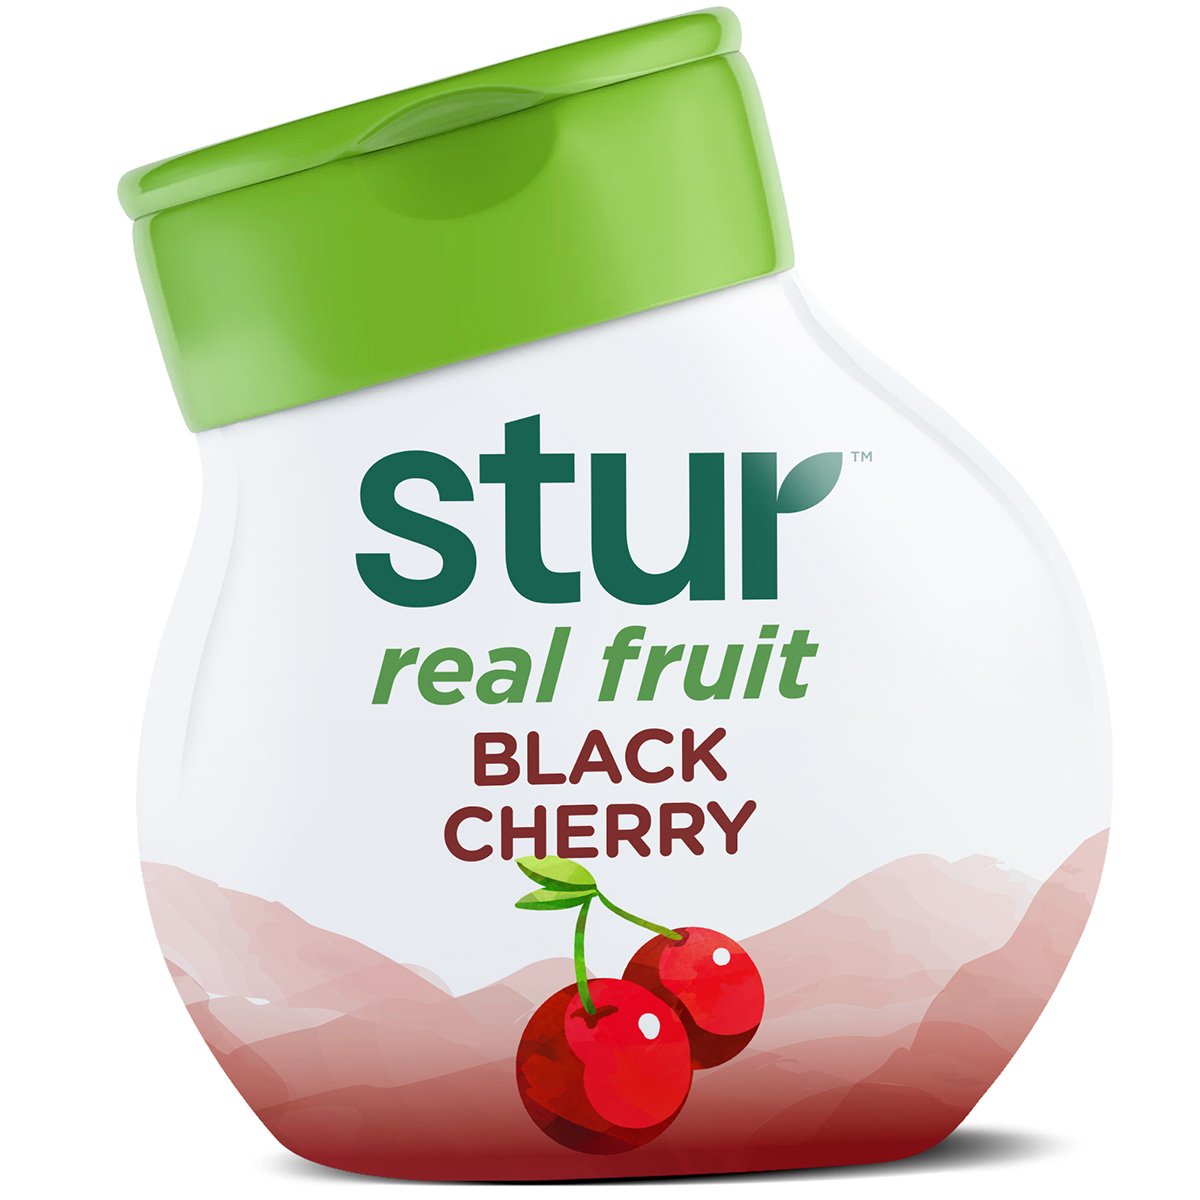 Stur Black Cherry Liquid Water Enhancer